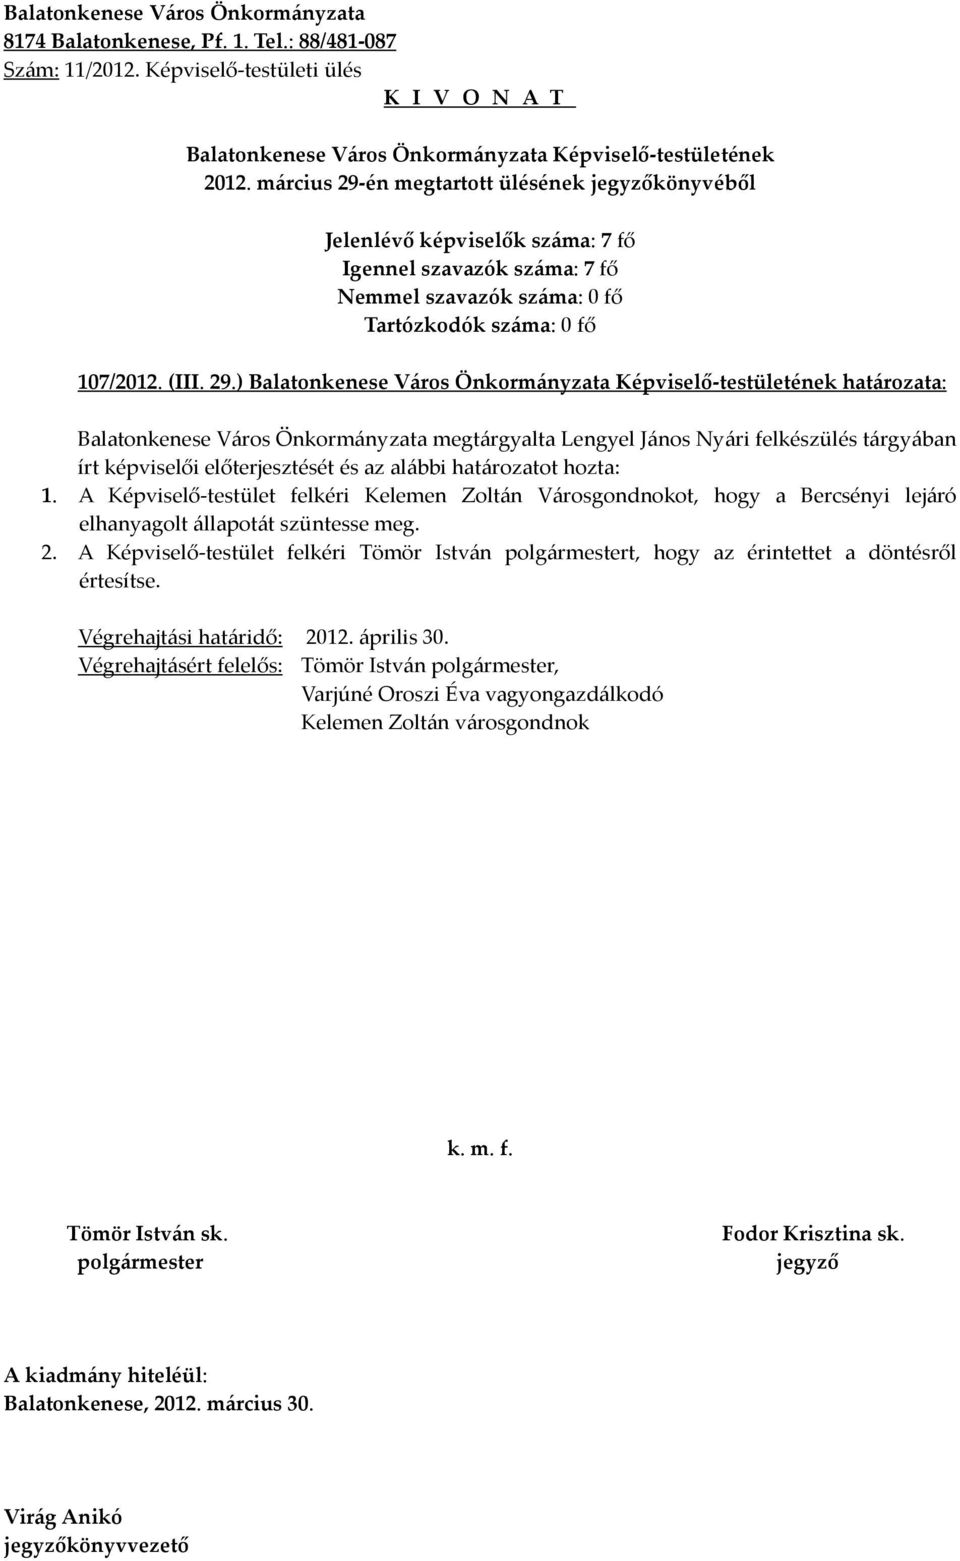 ) határozata: Balatonkenese Város Önkormányzata megtárgyalta Lengyel János Nyári felkészülés tárgyában írt képviselői előterjesztését és az alábbi